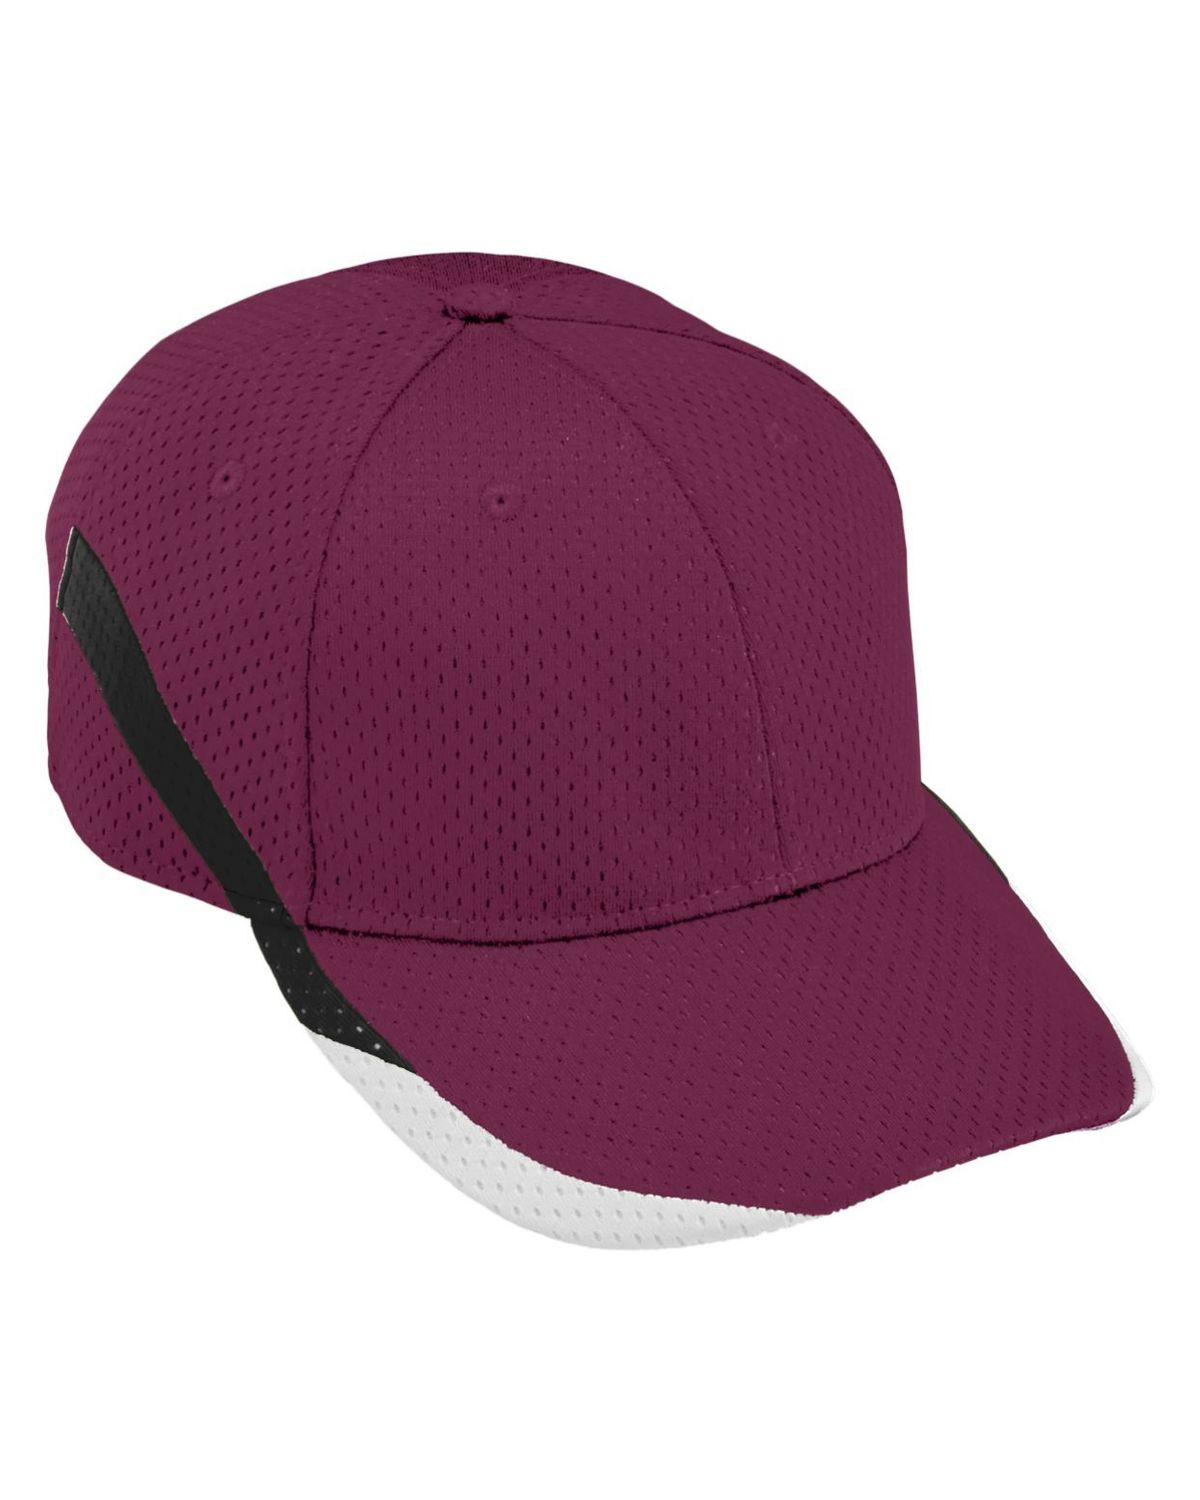 'Augusta Sportswear 6282 Slider Cap'